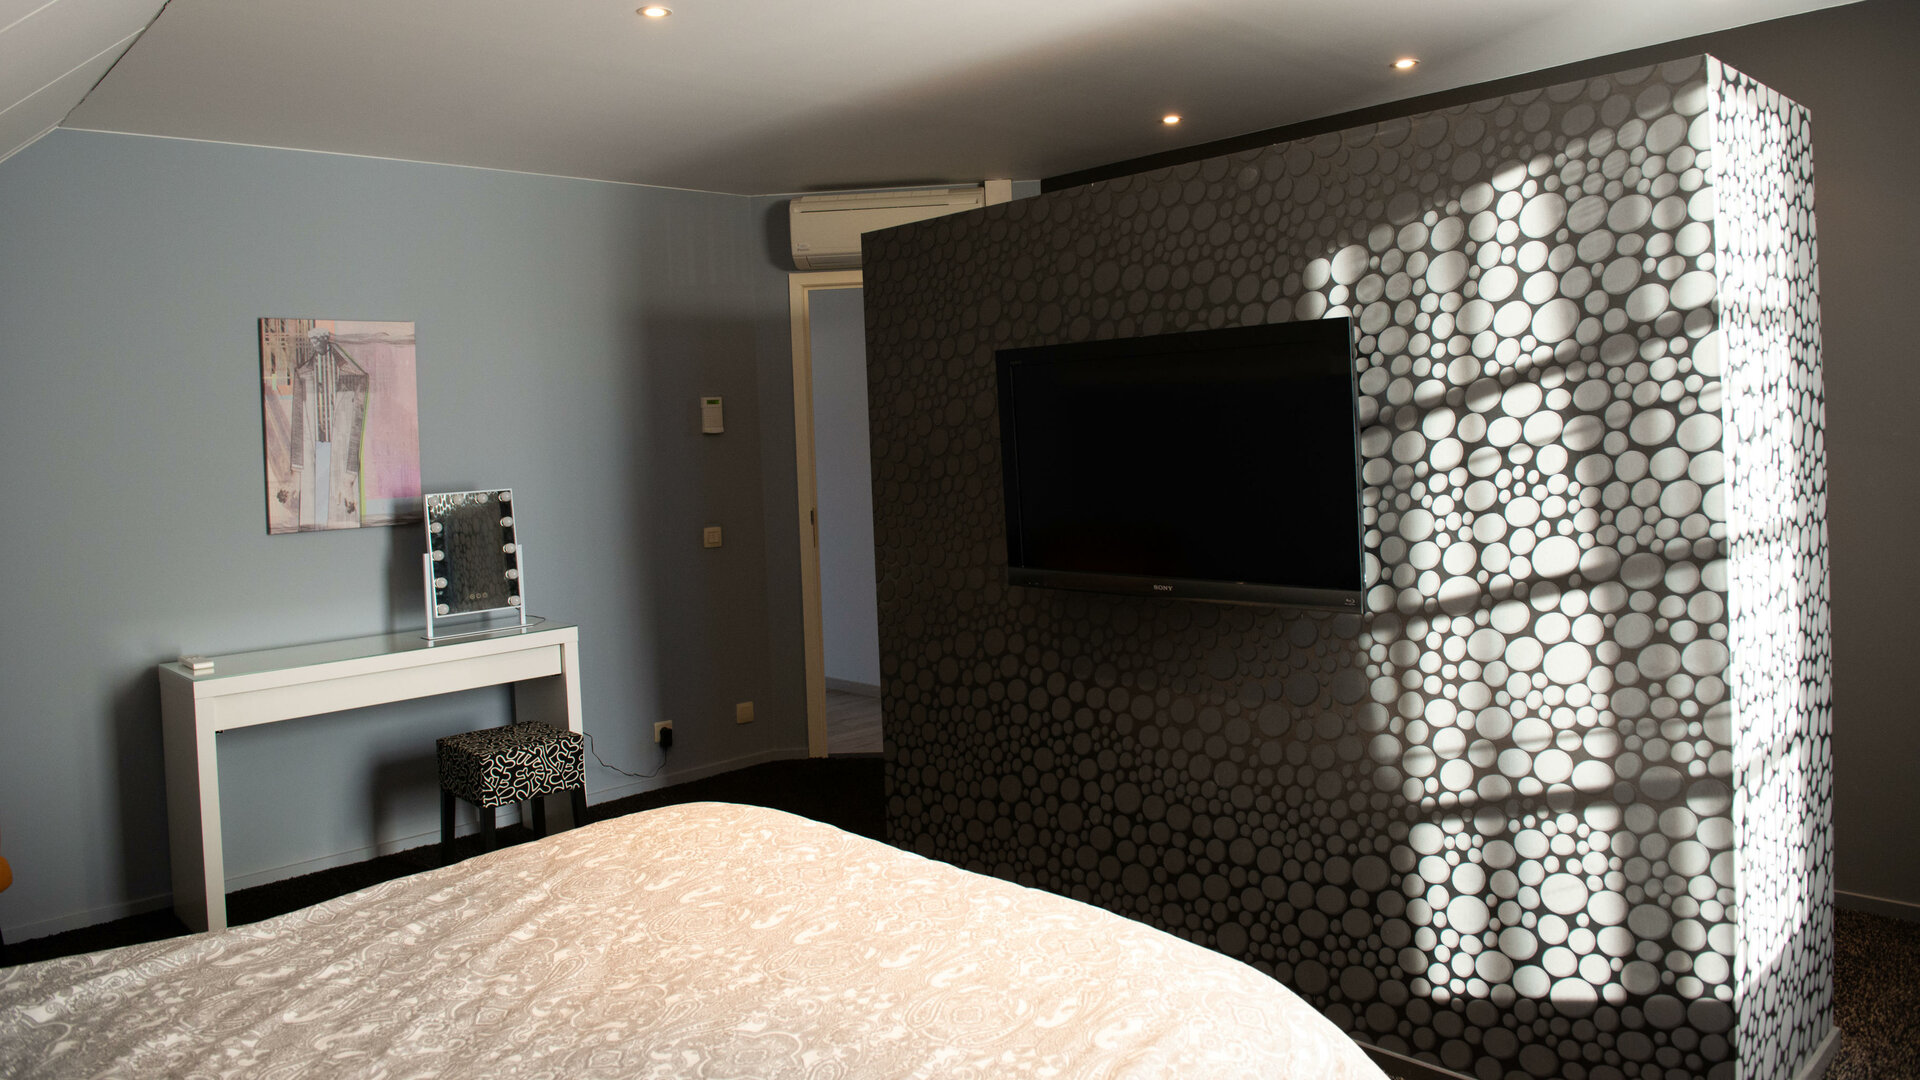 Zalig logeren in Haspengouw - slaapkamer master bedroom